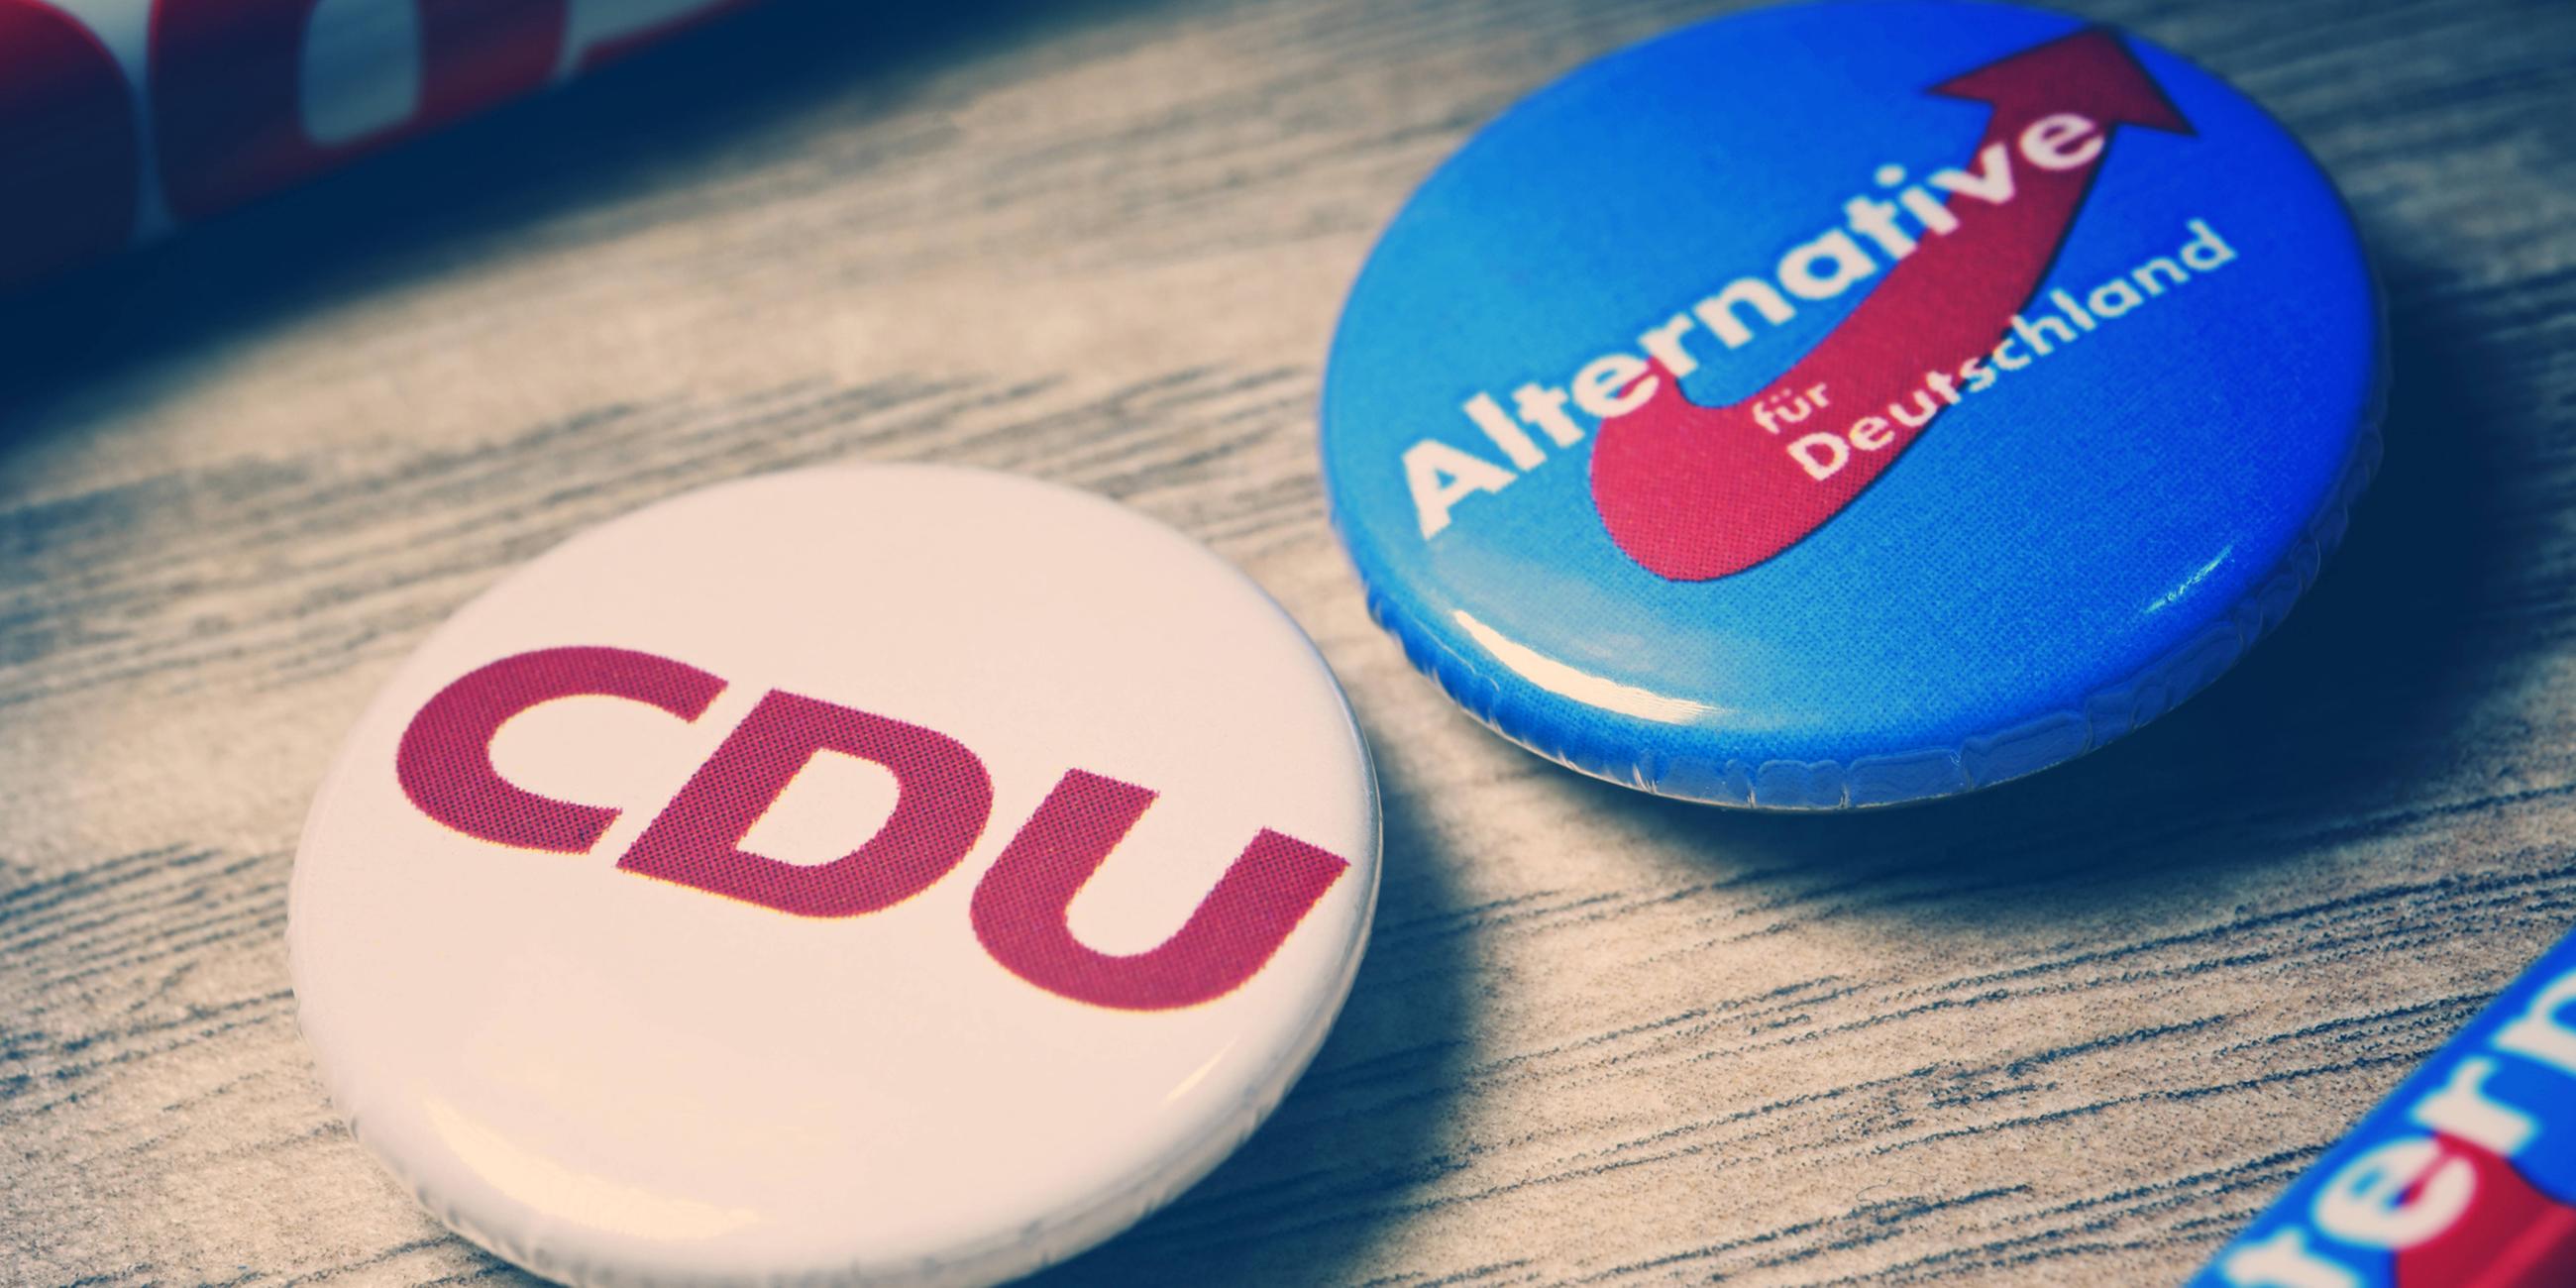 Partei-Anstecker mit Logos von CDU und AfD